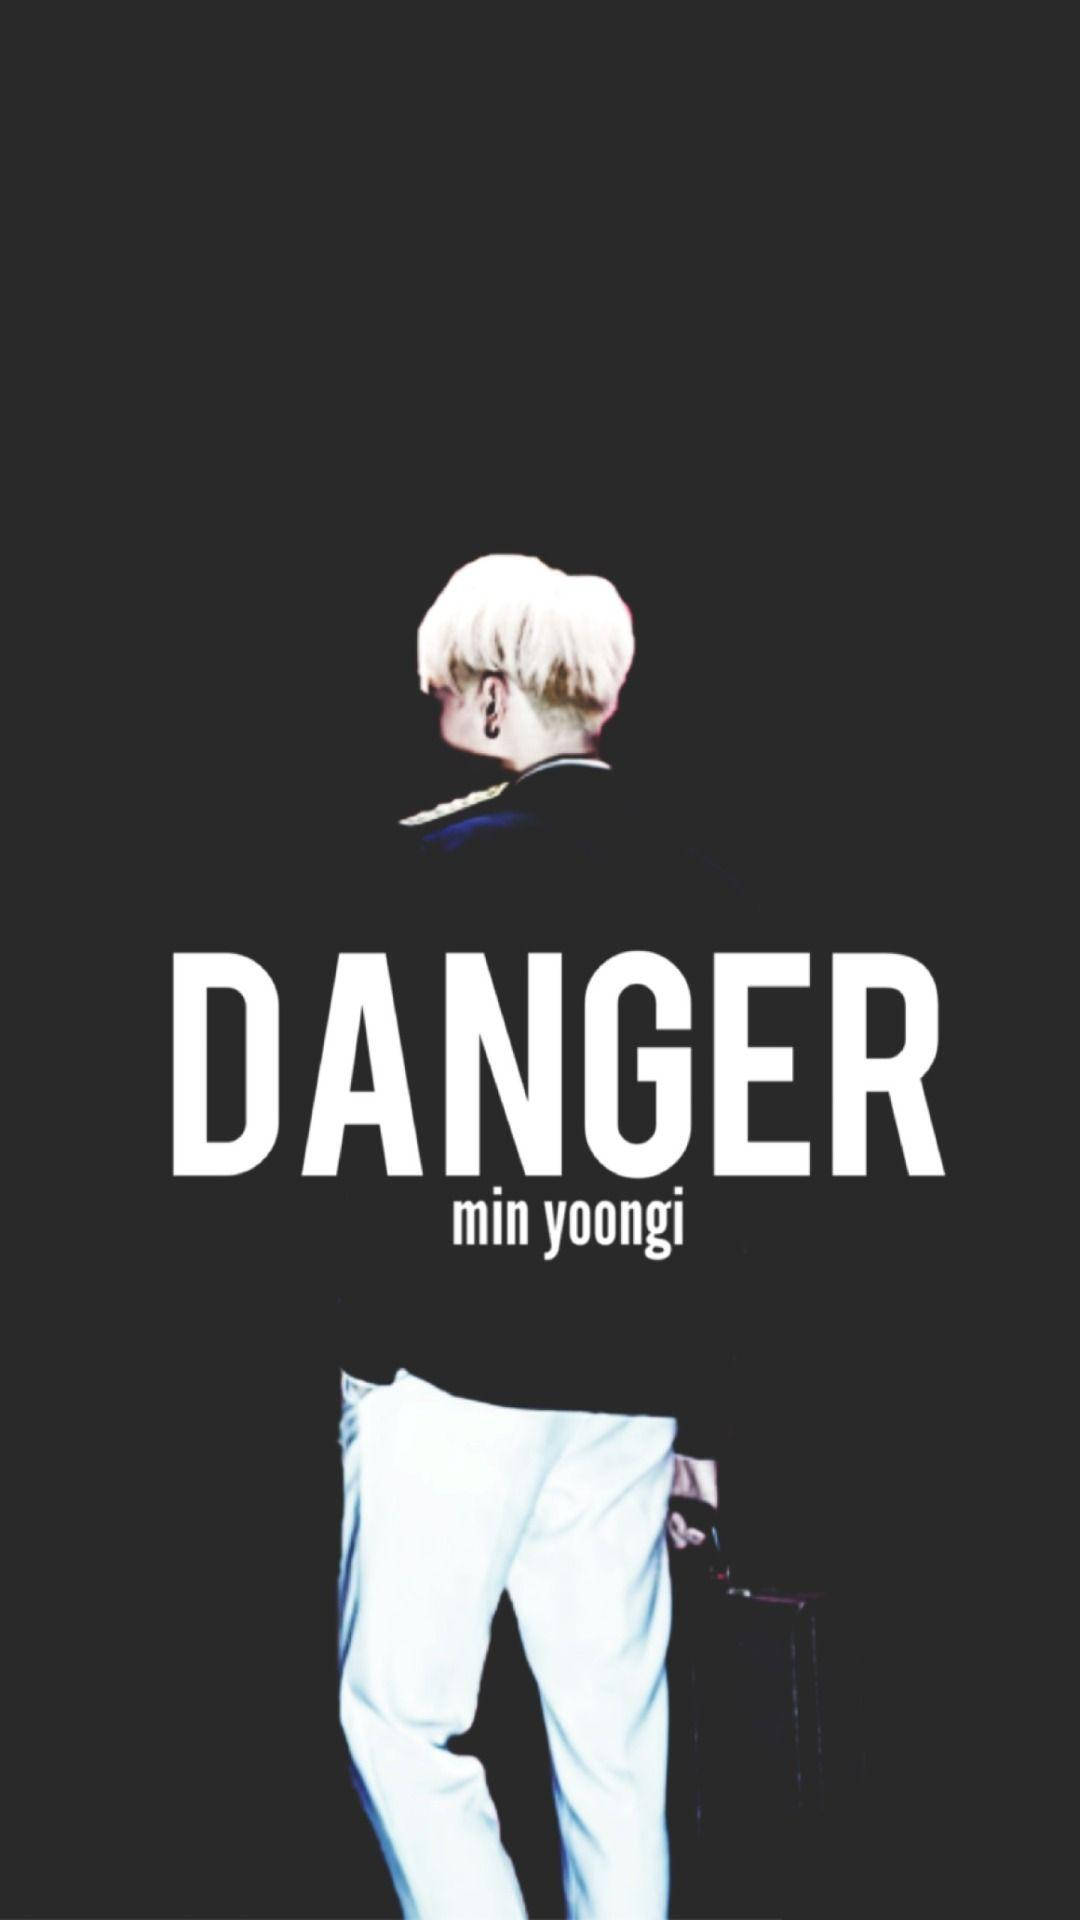 Suga Bts Danger Wallpaper